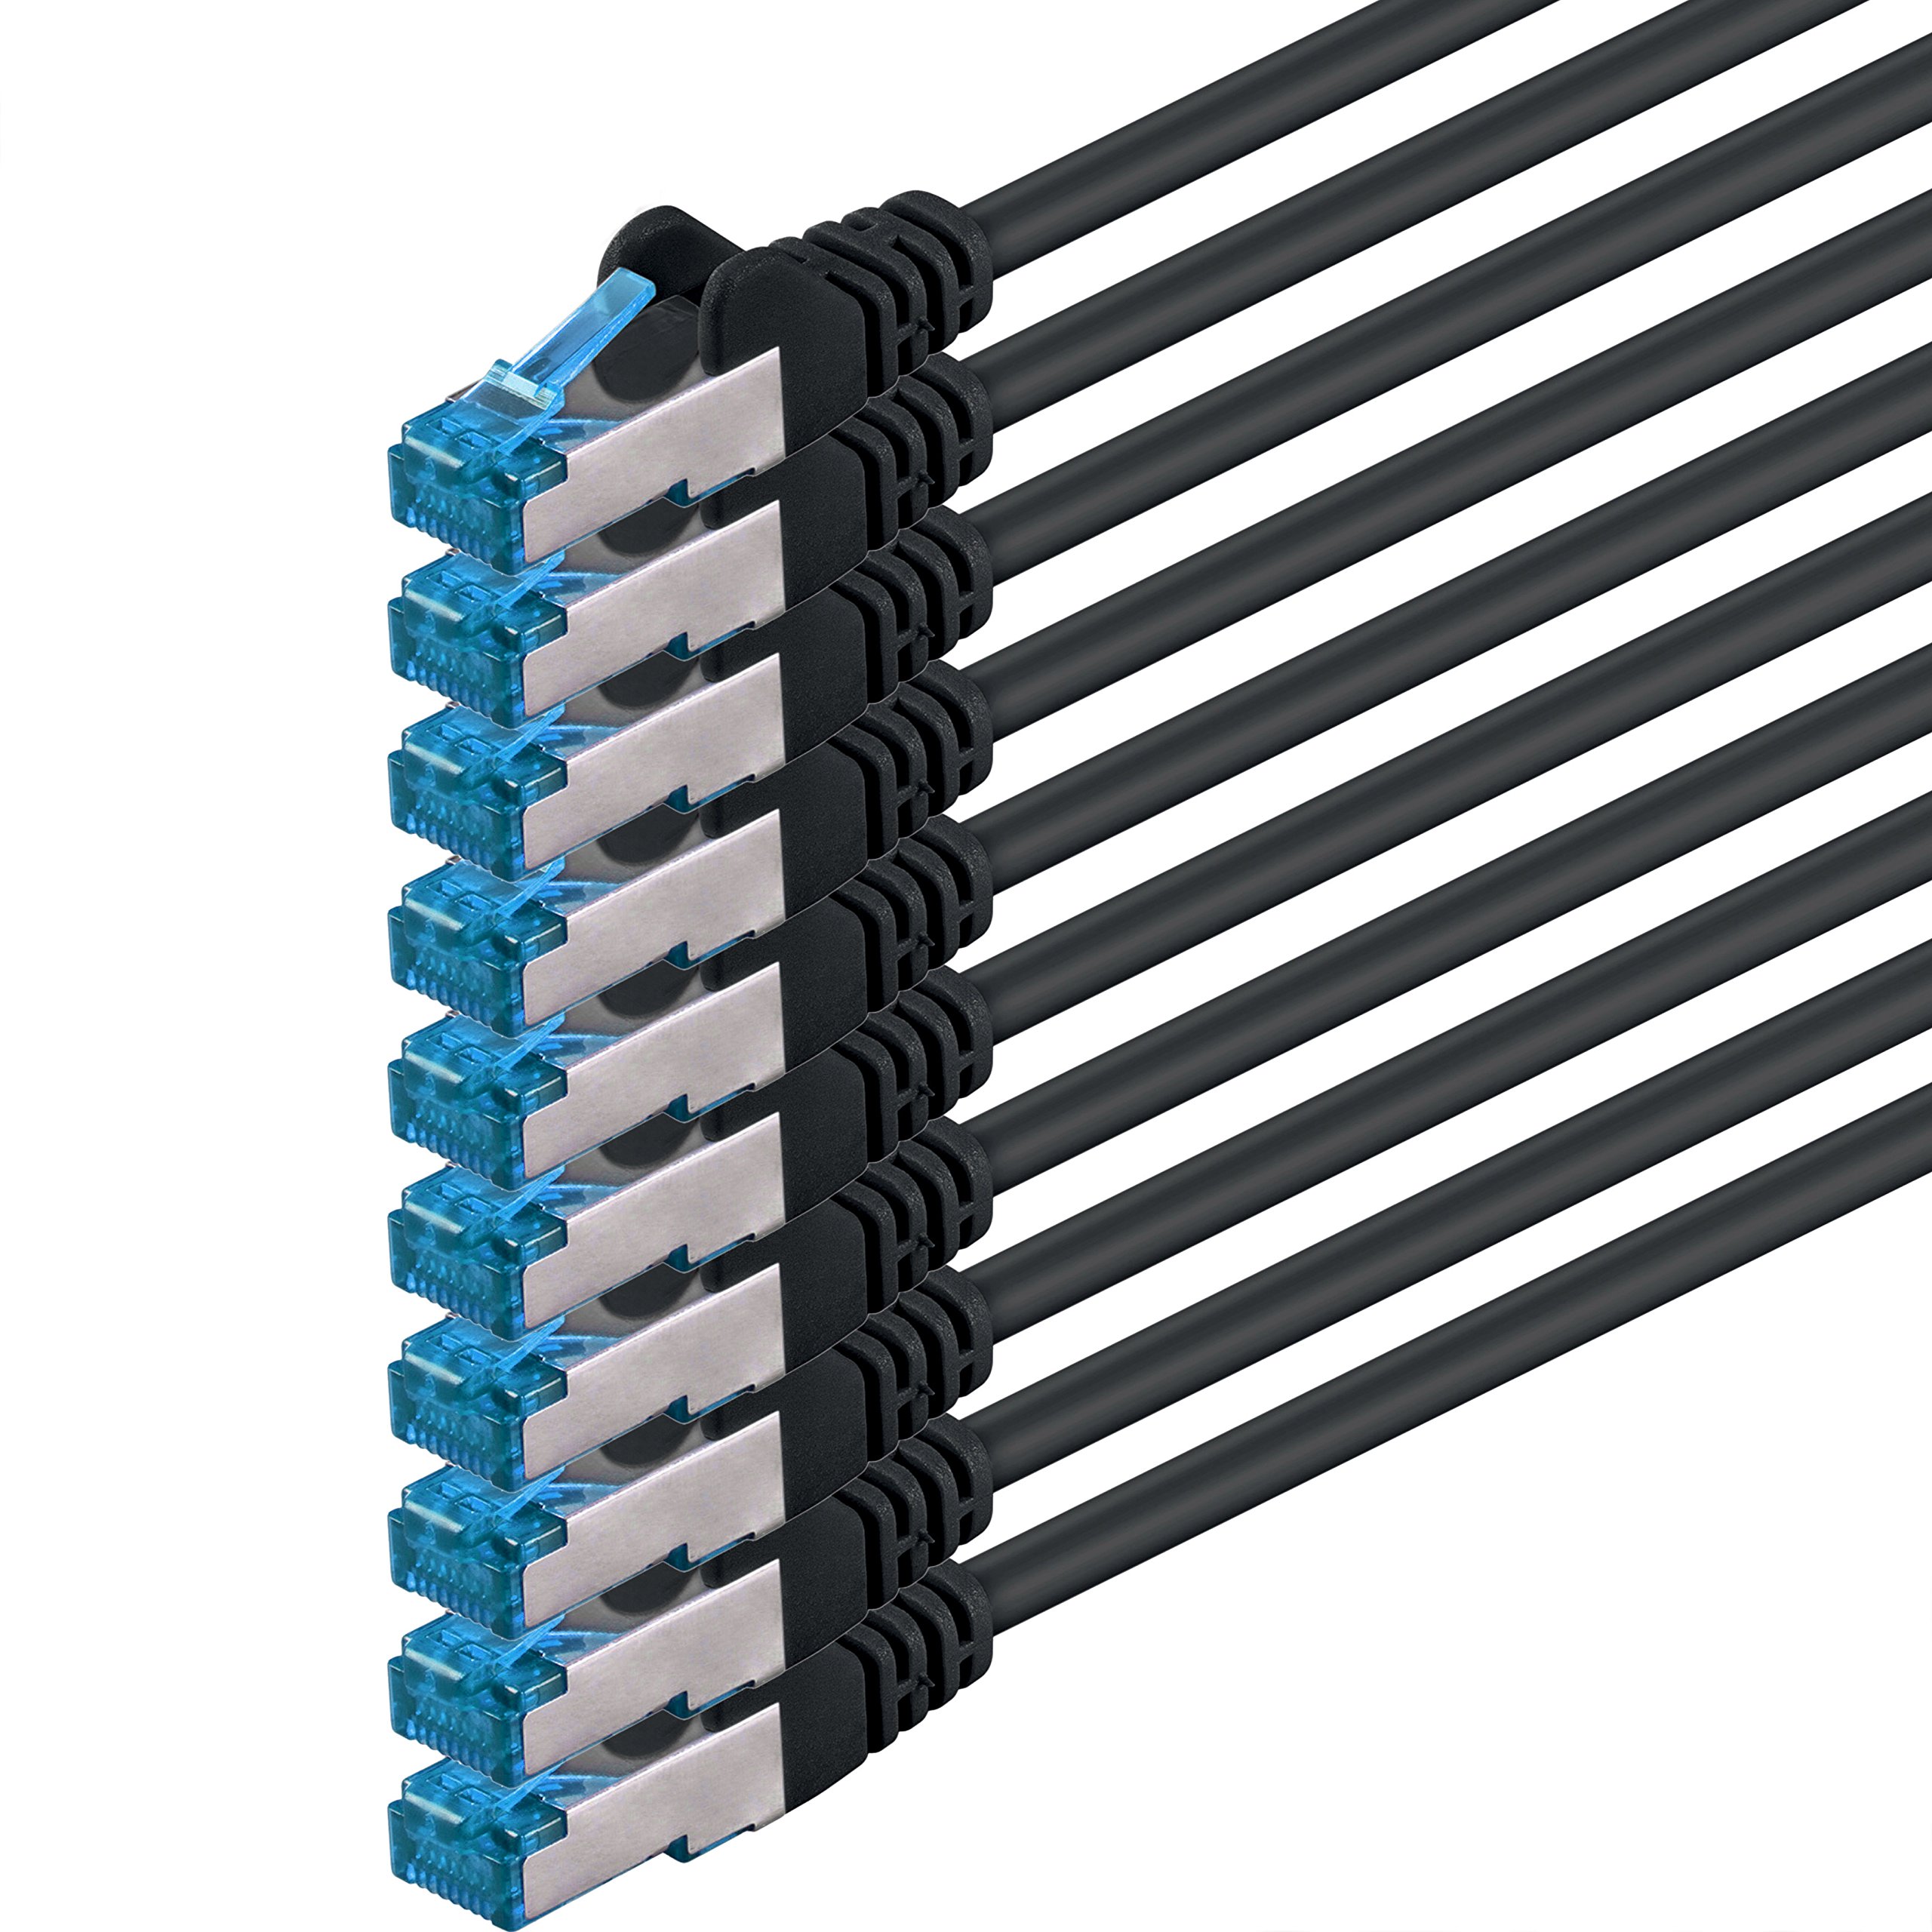 1CONN 10x 1.5 M - CAT-6a Netzwerk-Kabel Ethernet Cable Lan Patch RJ-45 Stecker SFTP 10GB/s - 10 Stück Schwarz